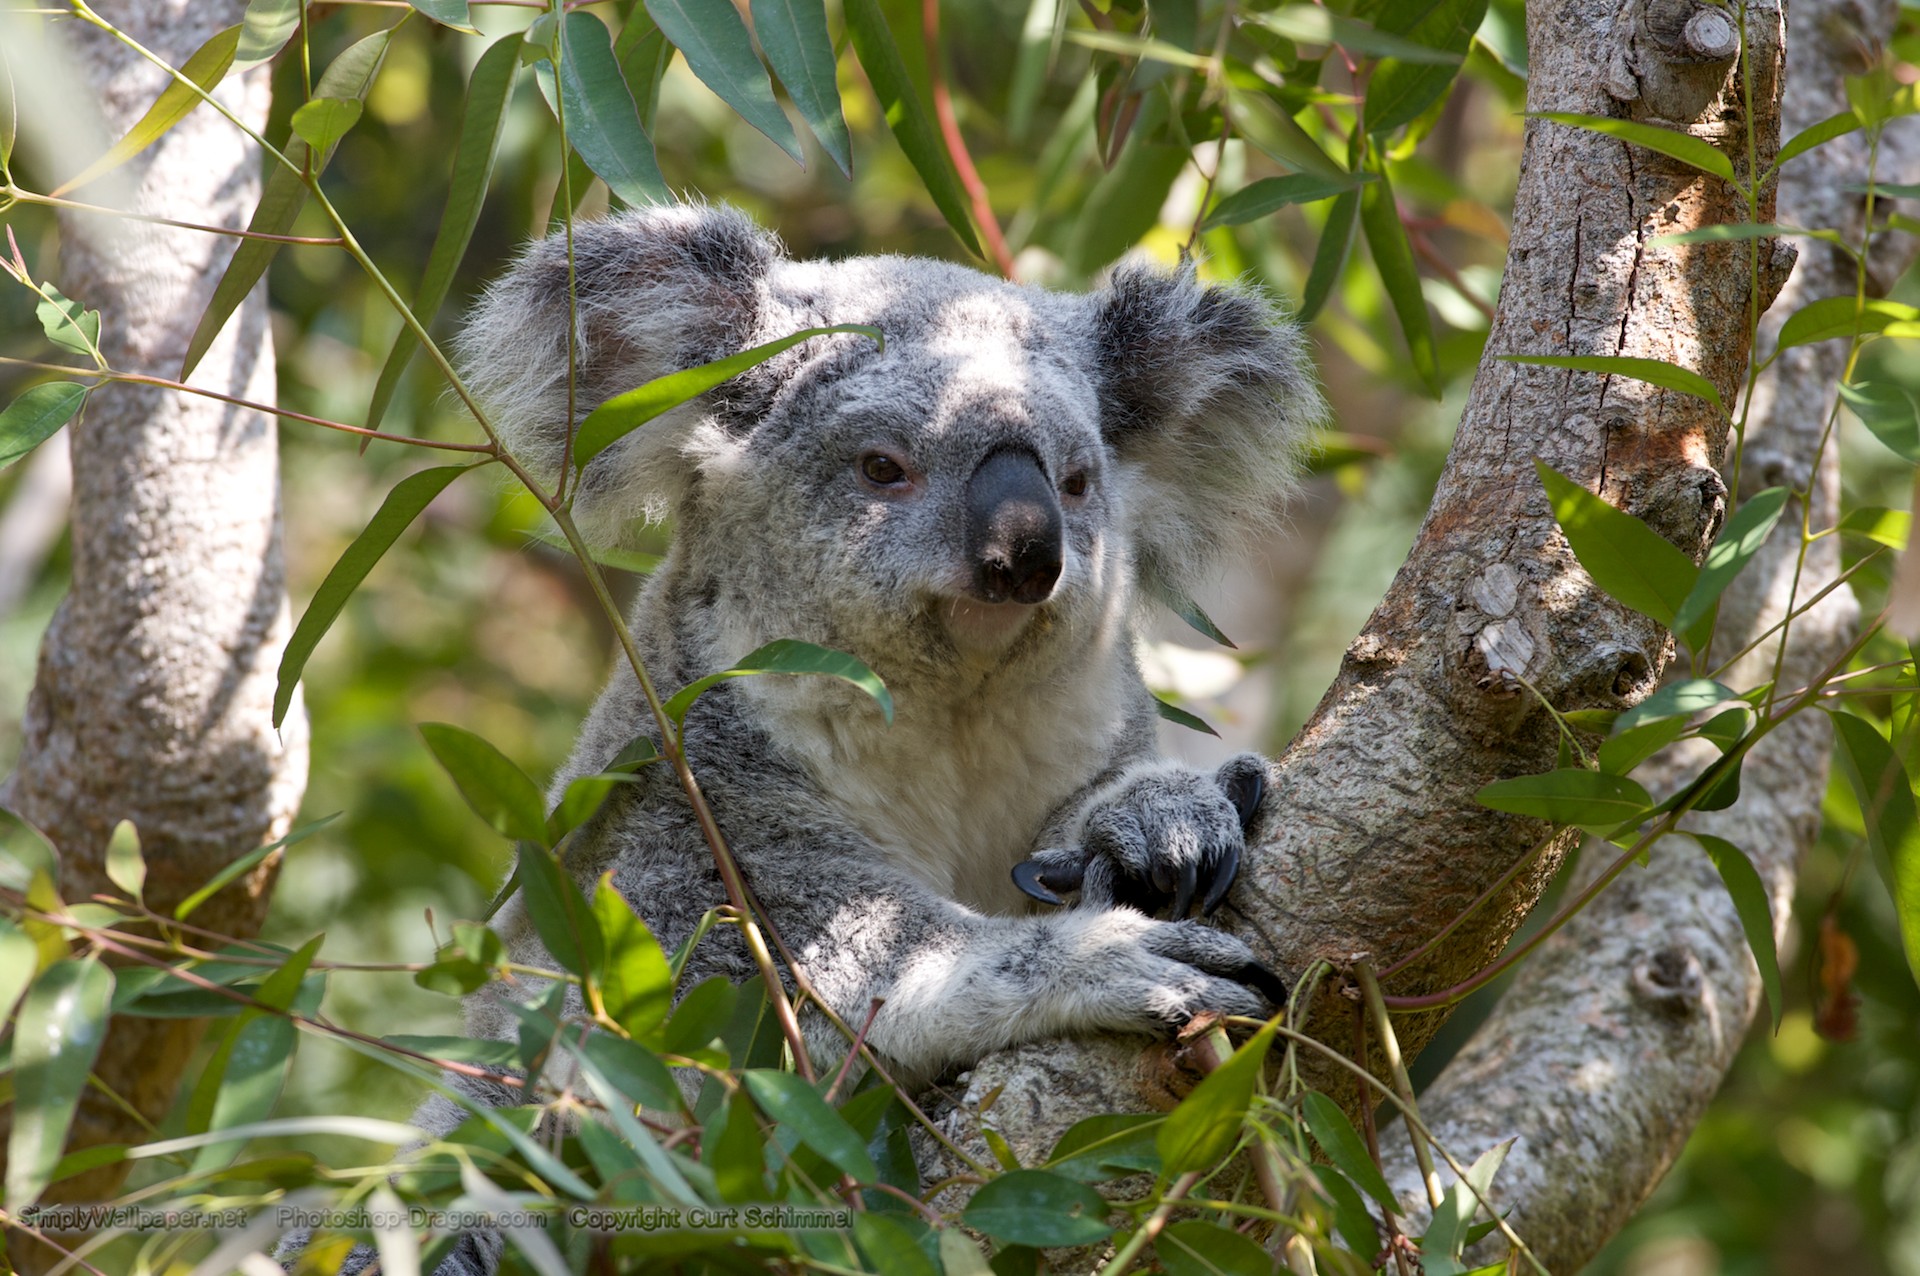 Url Simplywallpaper Desktop Koala Bear In A Tree Html